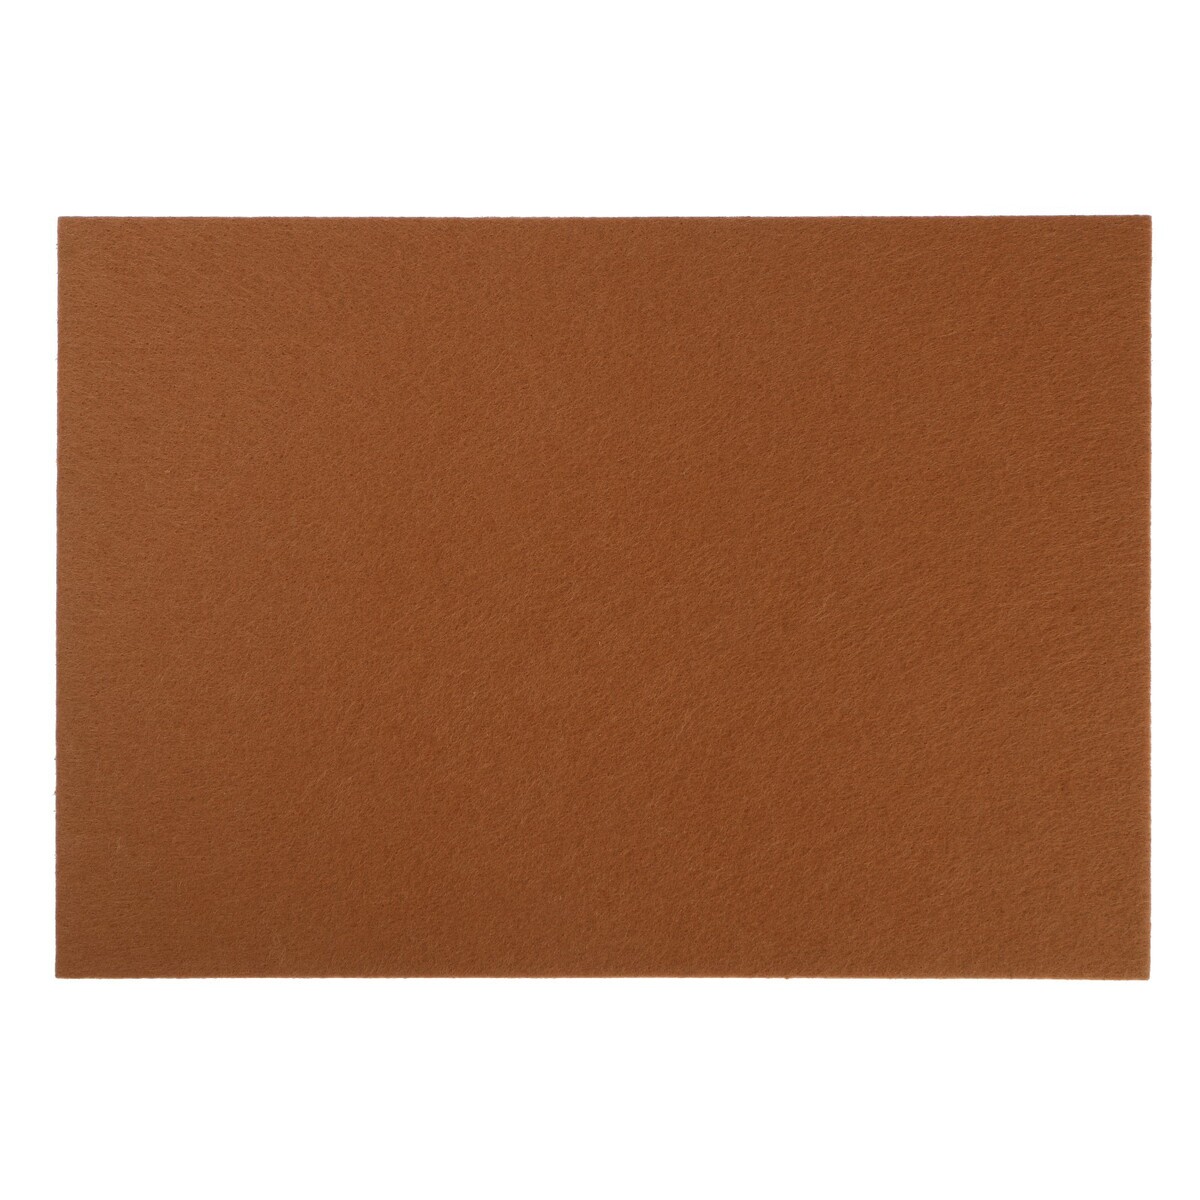 Накладка для мебели из войлока, 210х300 мм, клейкая поверхность, цвет светло-коричневый накладка для мебели из войлока 210х300 мм клейкая поверхность рисовый